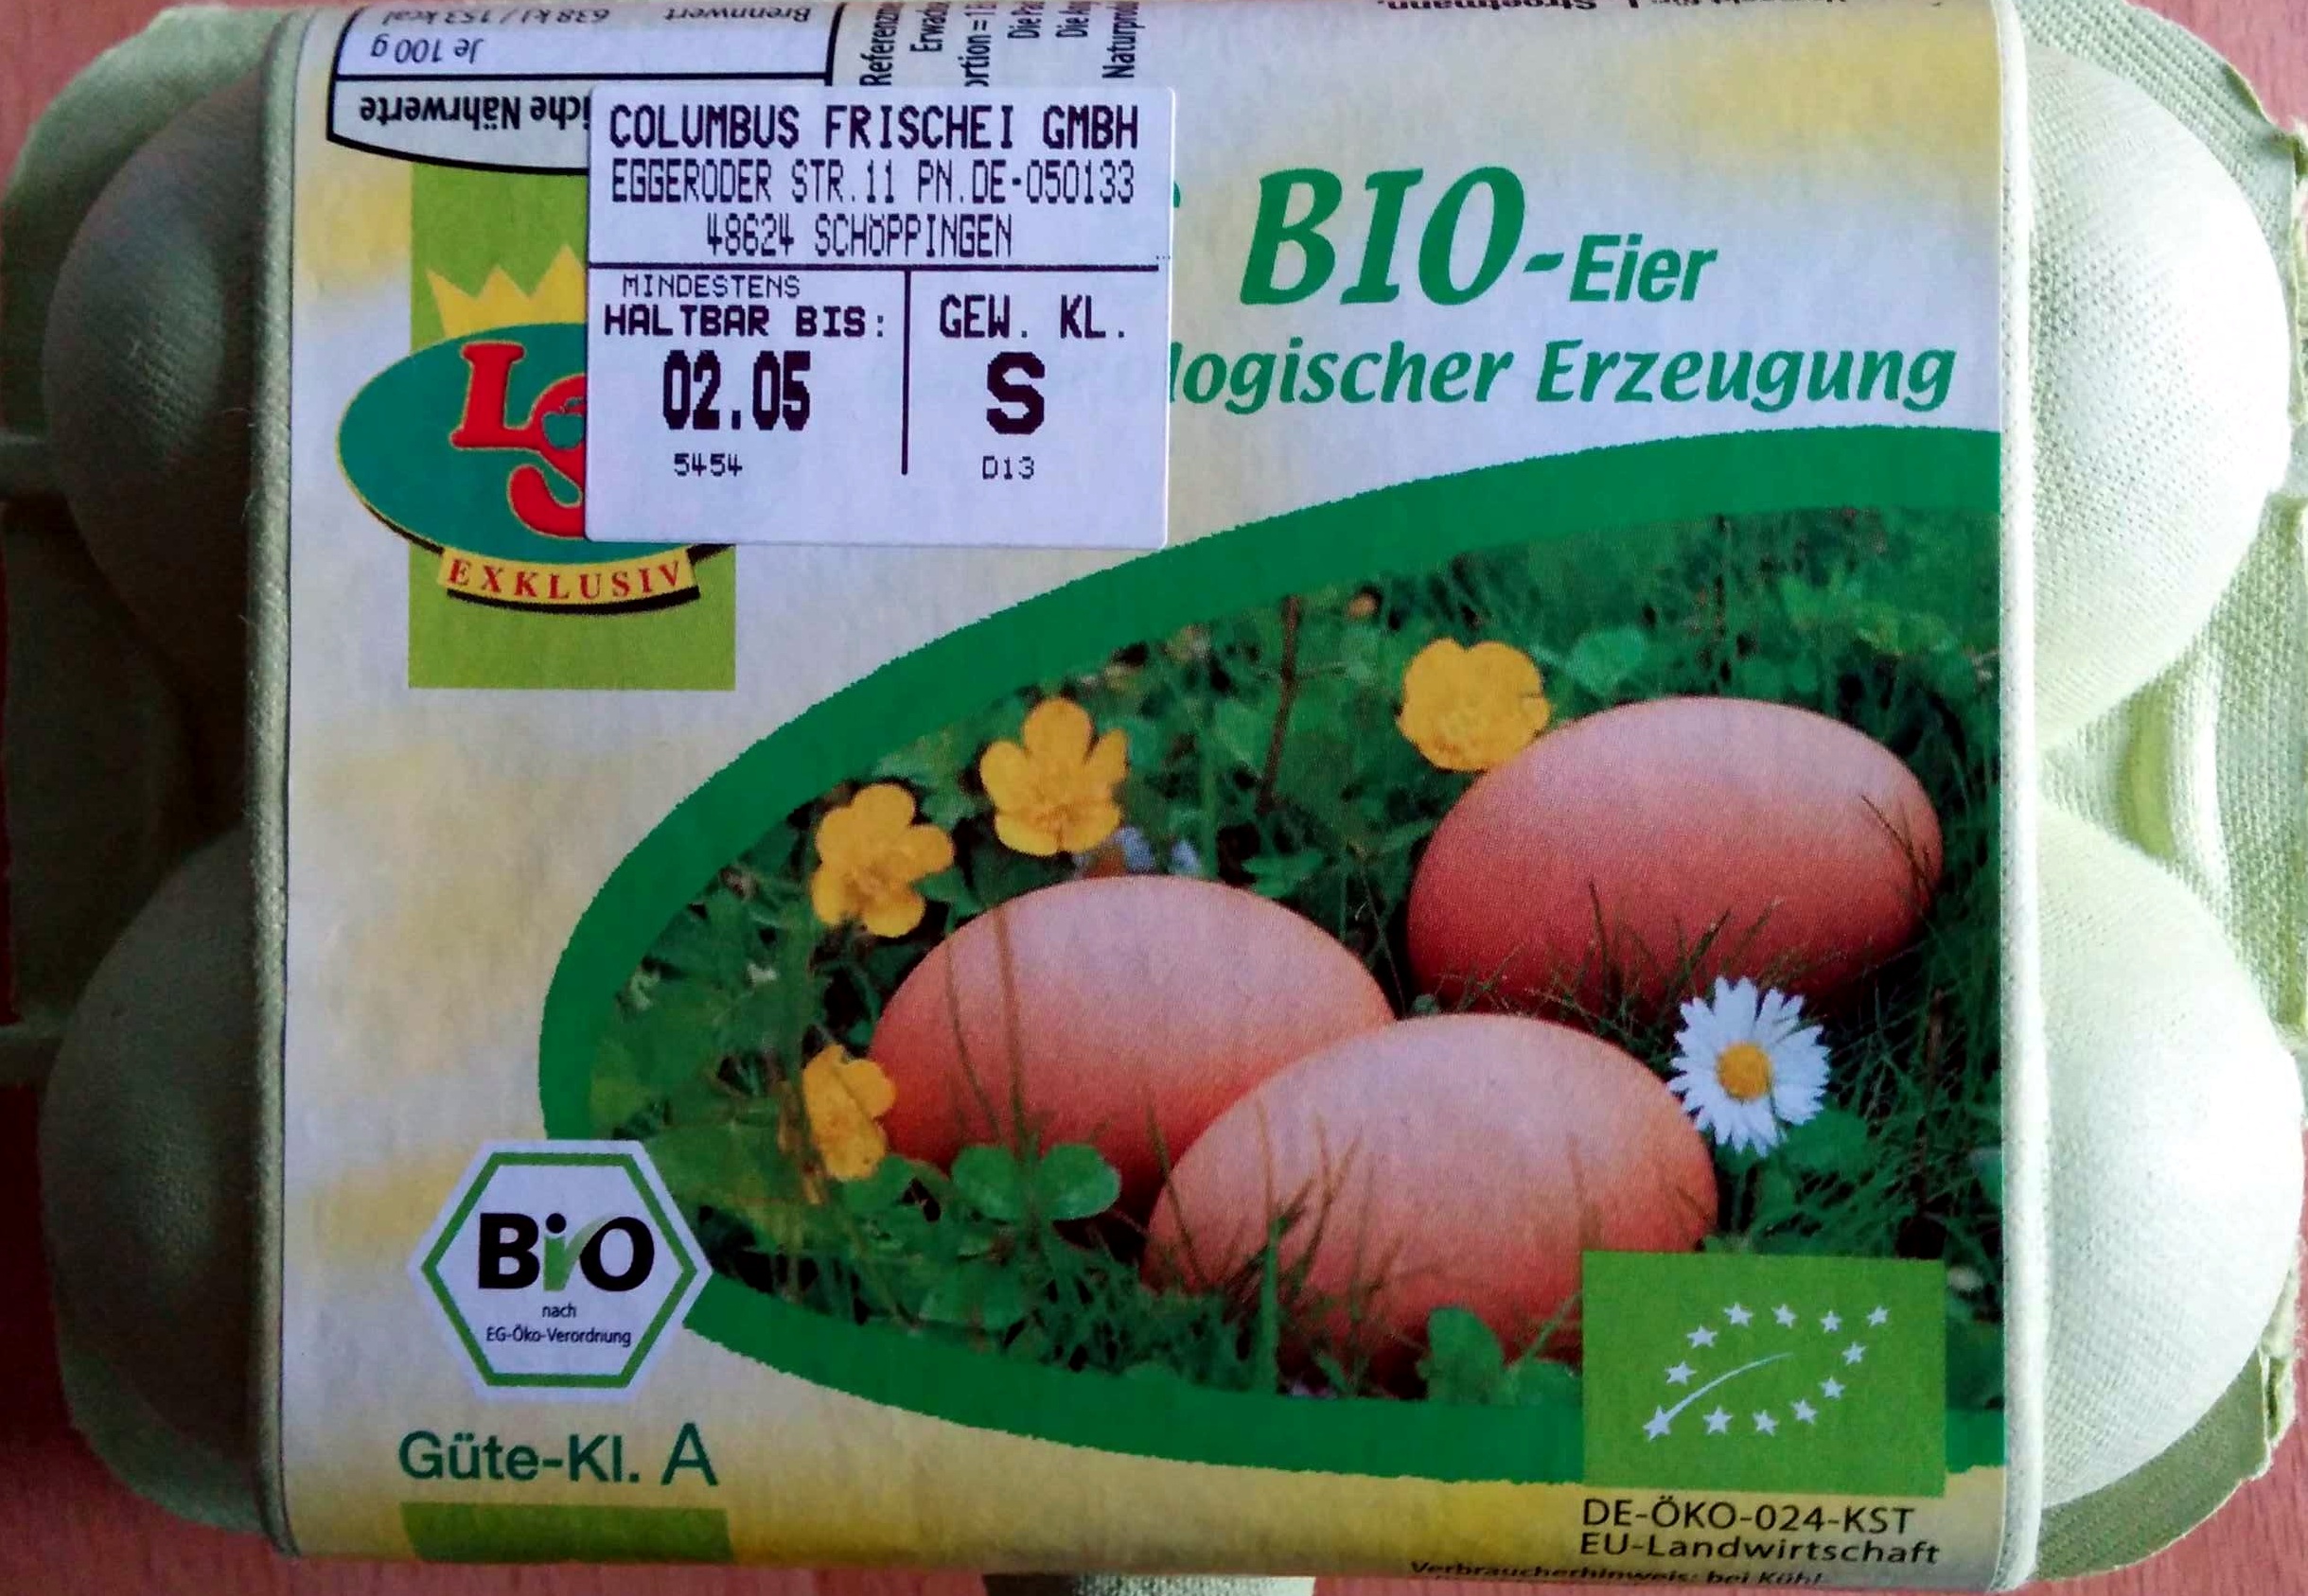 6 BIO-Eier aus ökologischer Erzeugung - Produkt